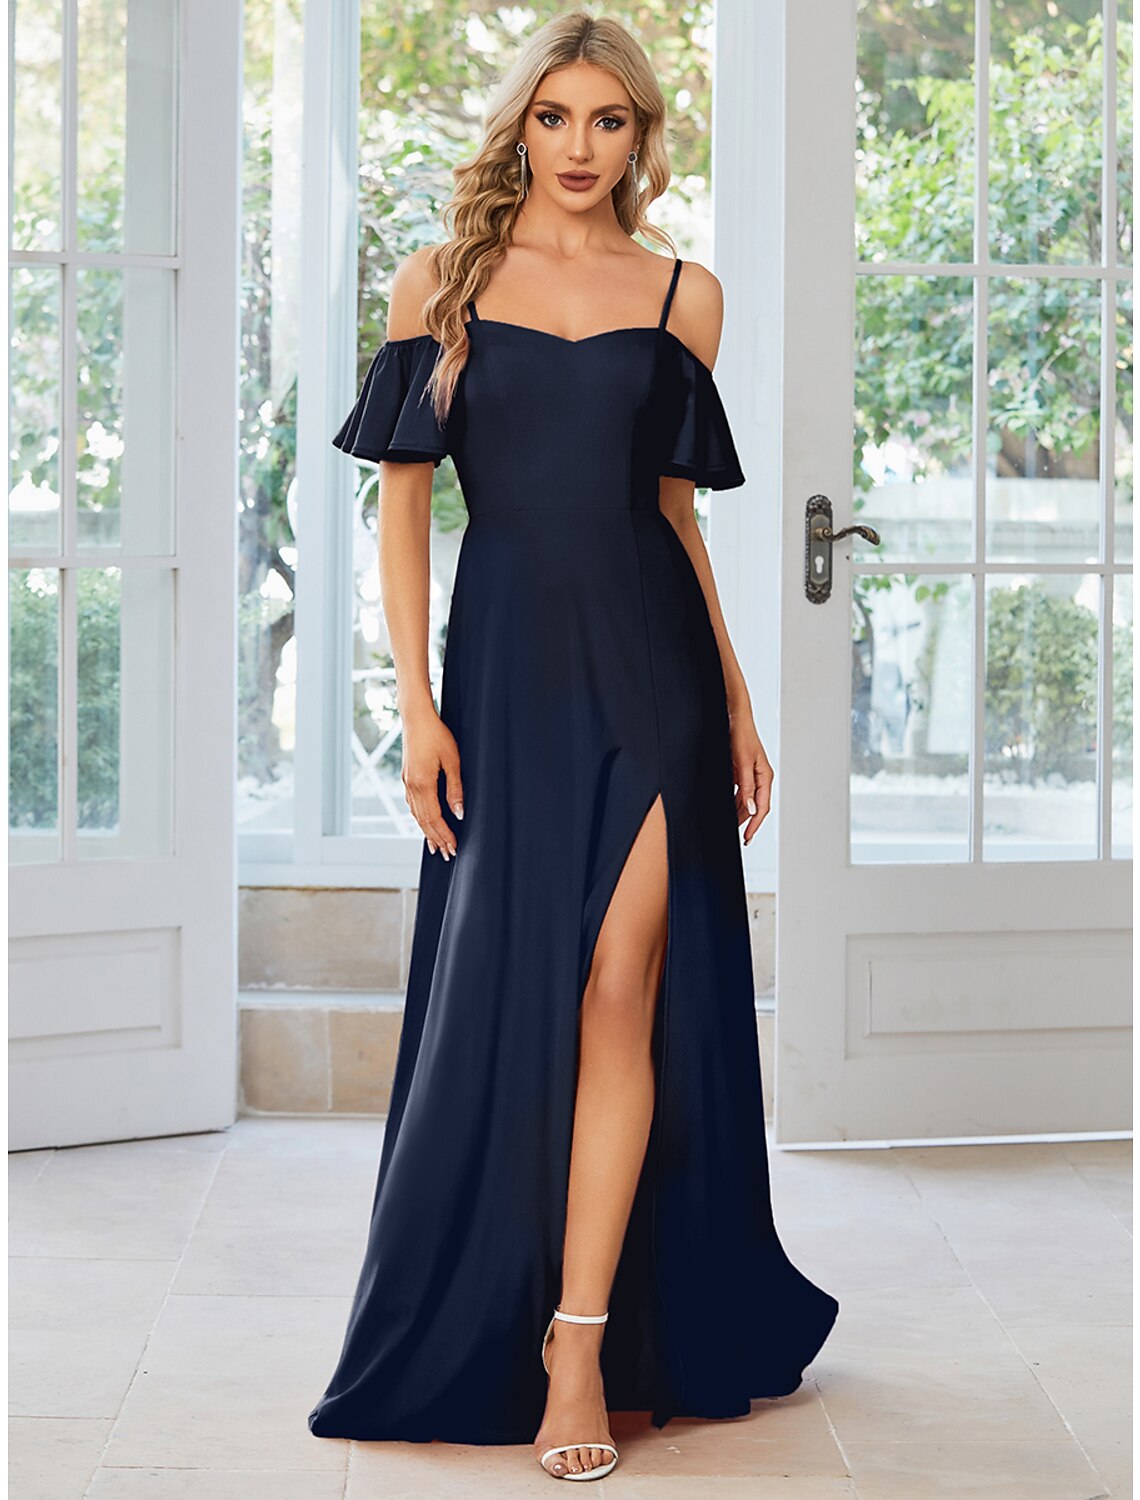 A-Line Wedding Guest Dresses Elegant Dress Formal Floor Length Short Sleeve Off Shoulder Stretch Fabric with Slit